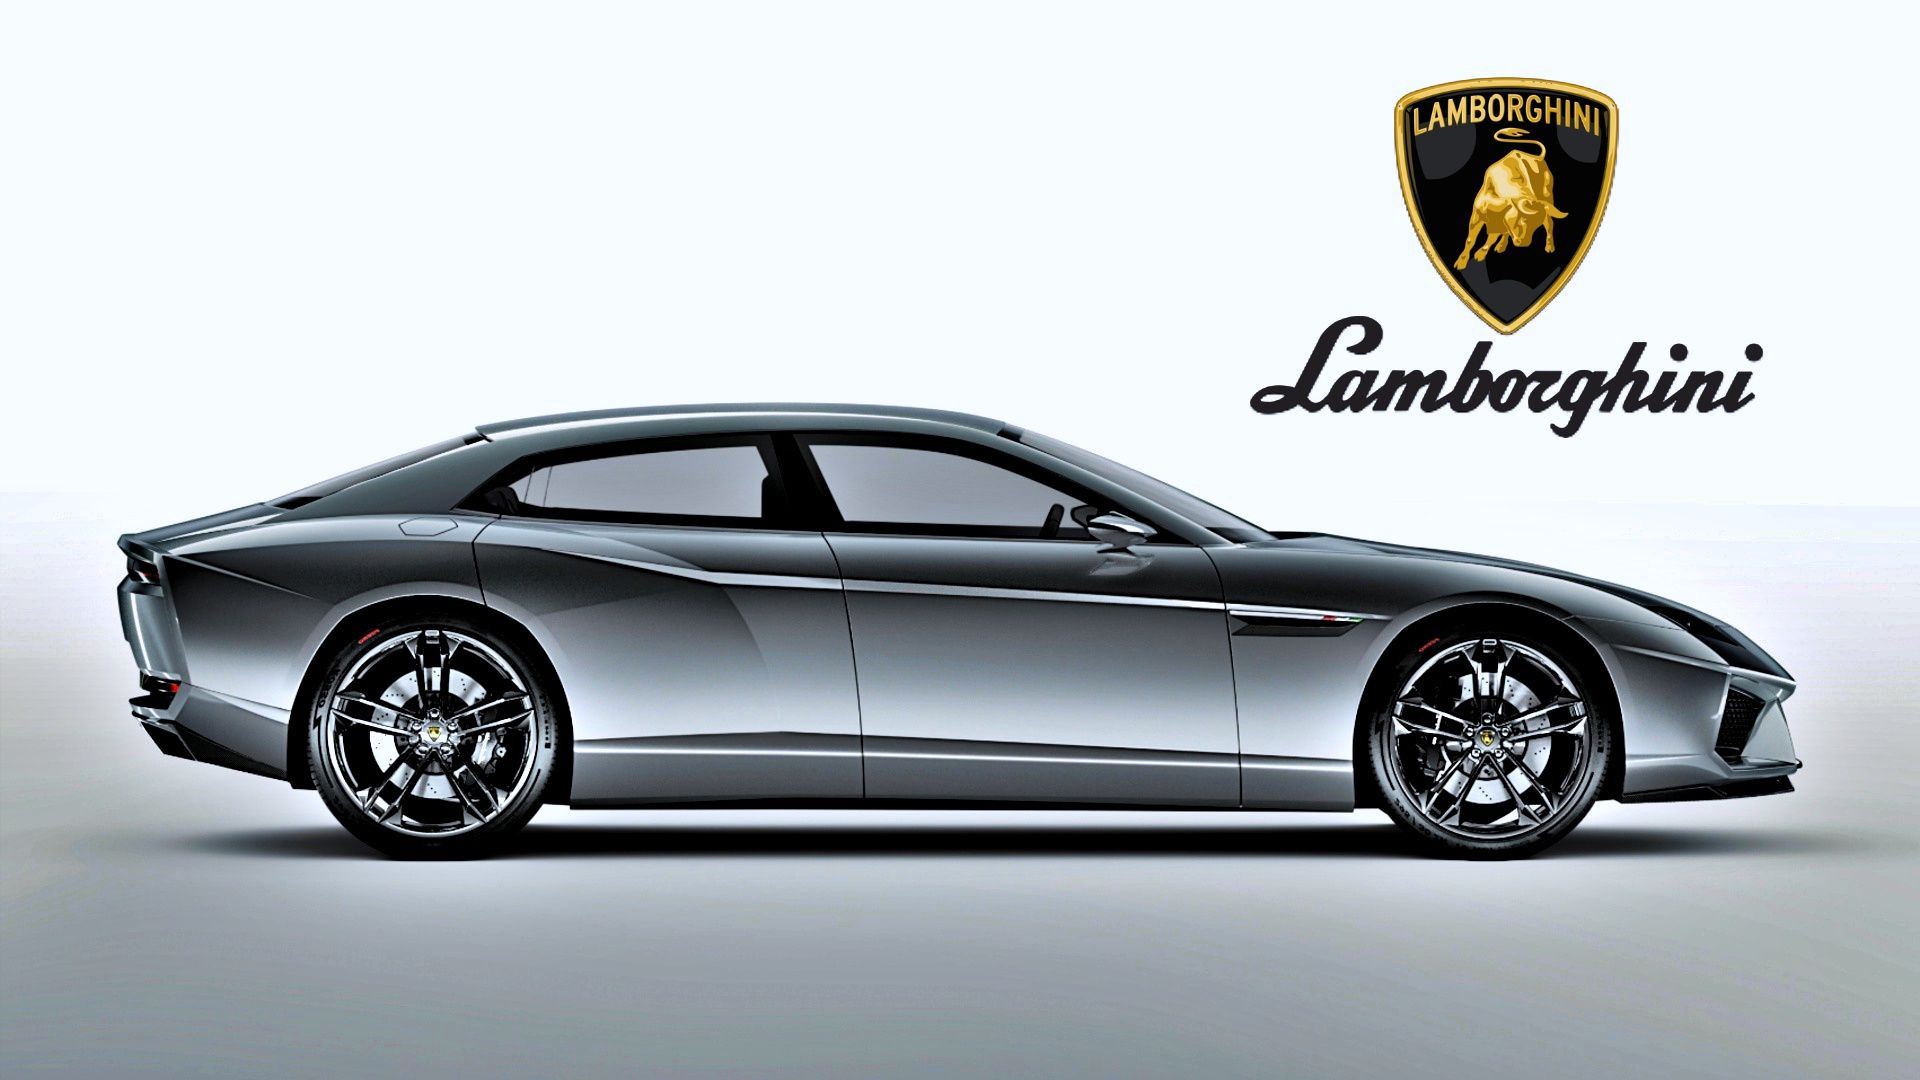 Silver 2009 Lamborghini-Estoque concept